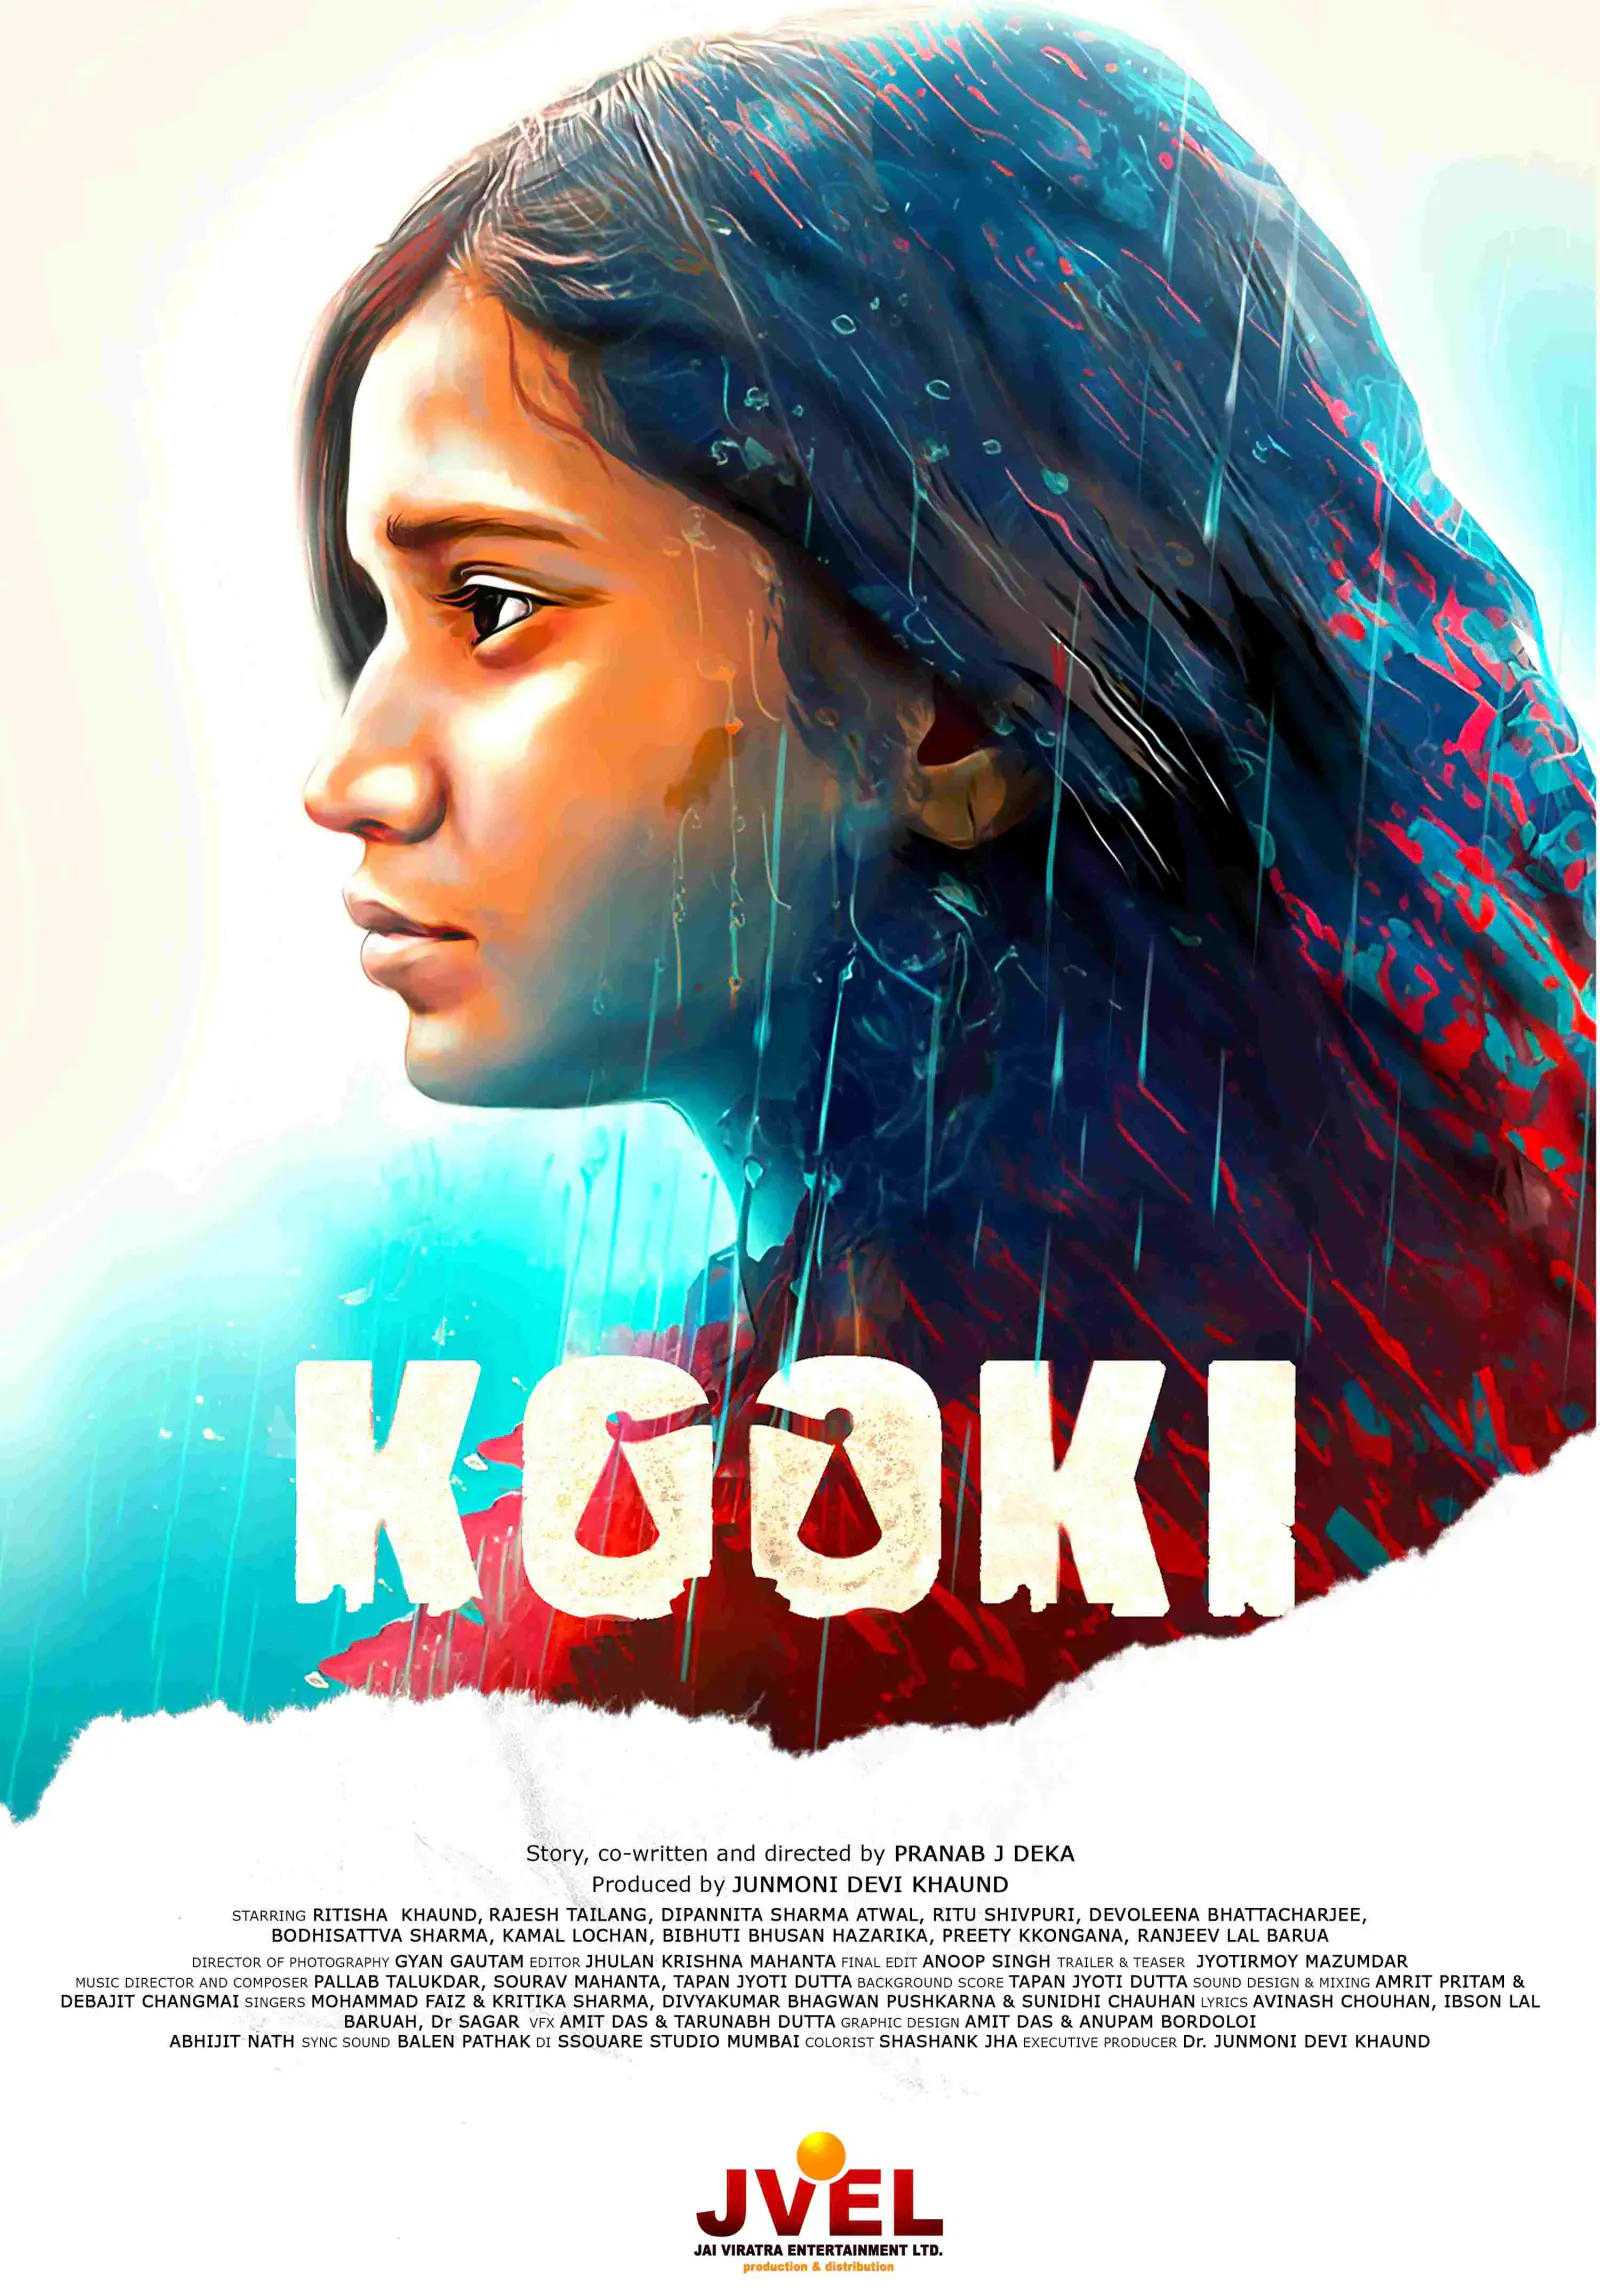 फ़िल्म 'कूकी', कान फ़िल्म महोत्सव के अन्तर्गत फिल्म मार्केट (मार्चे डु फिल्म) में प्रदर्शित, 28 जून को सिनेमाघरों में होगी रिलीज़